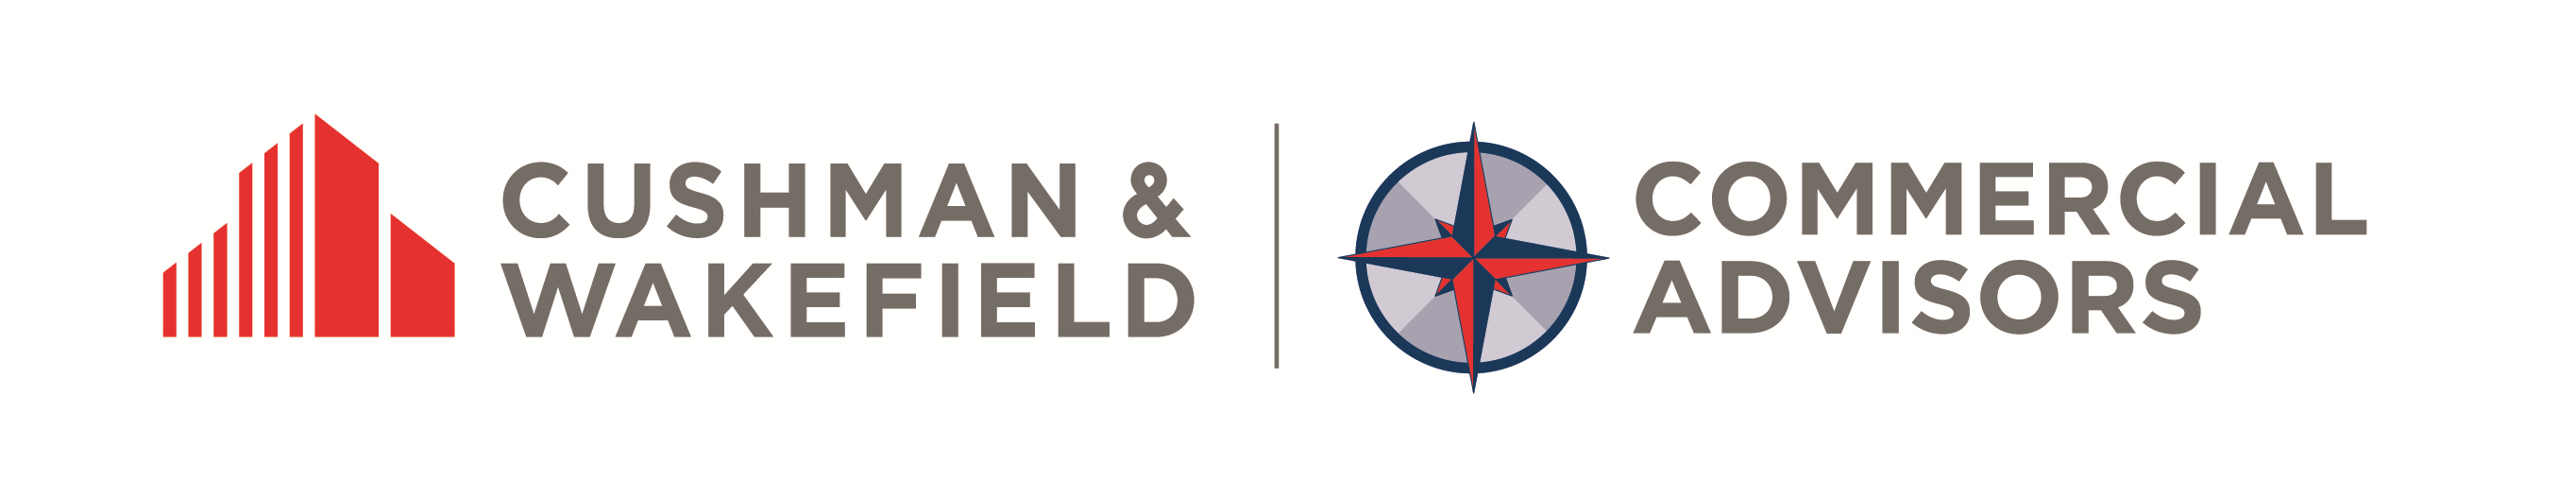 Cushman & Wakefield | Commercial Advisors Company Logo